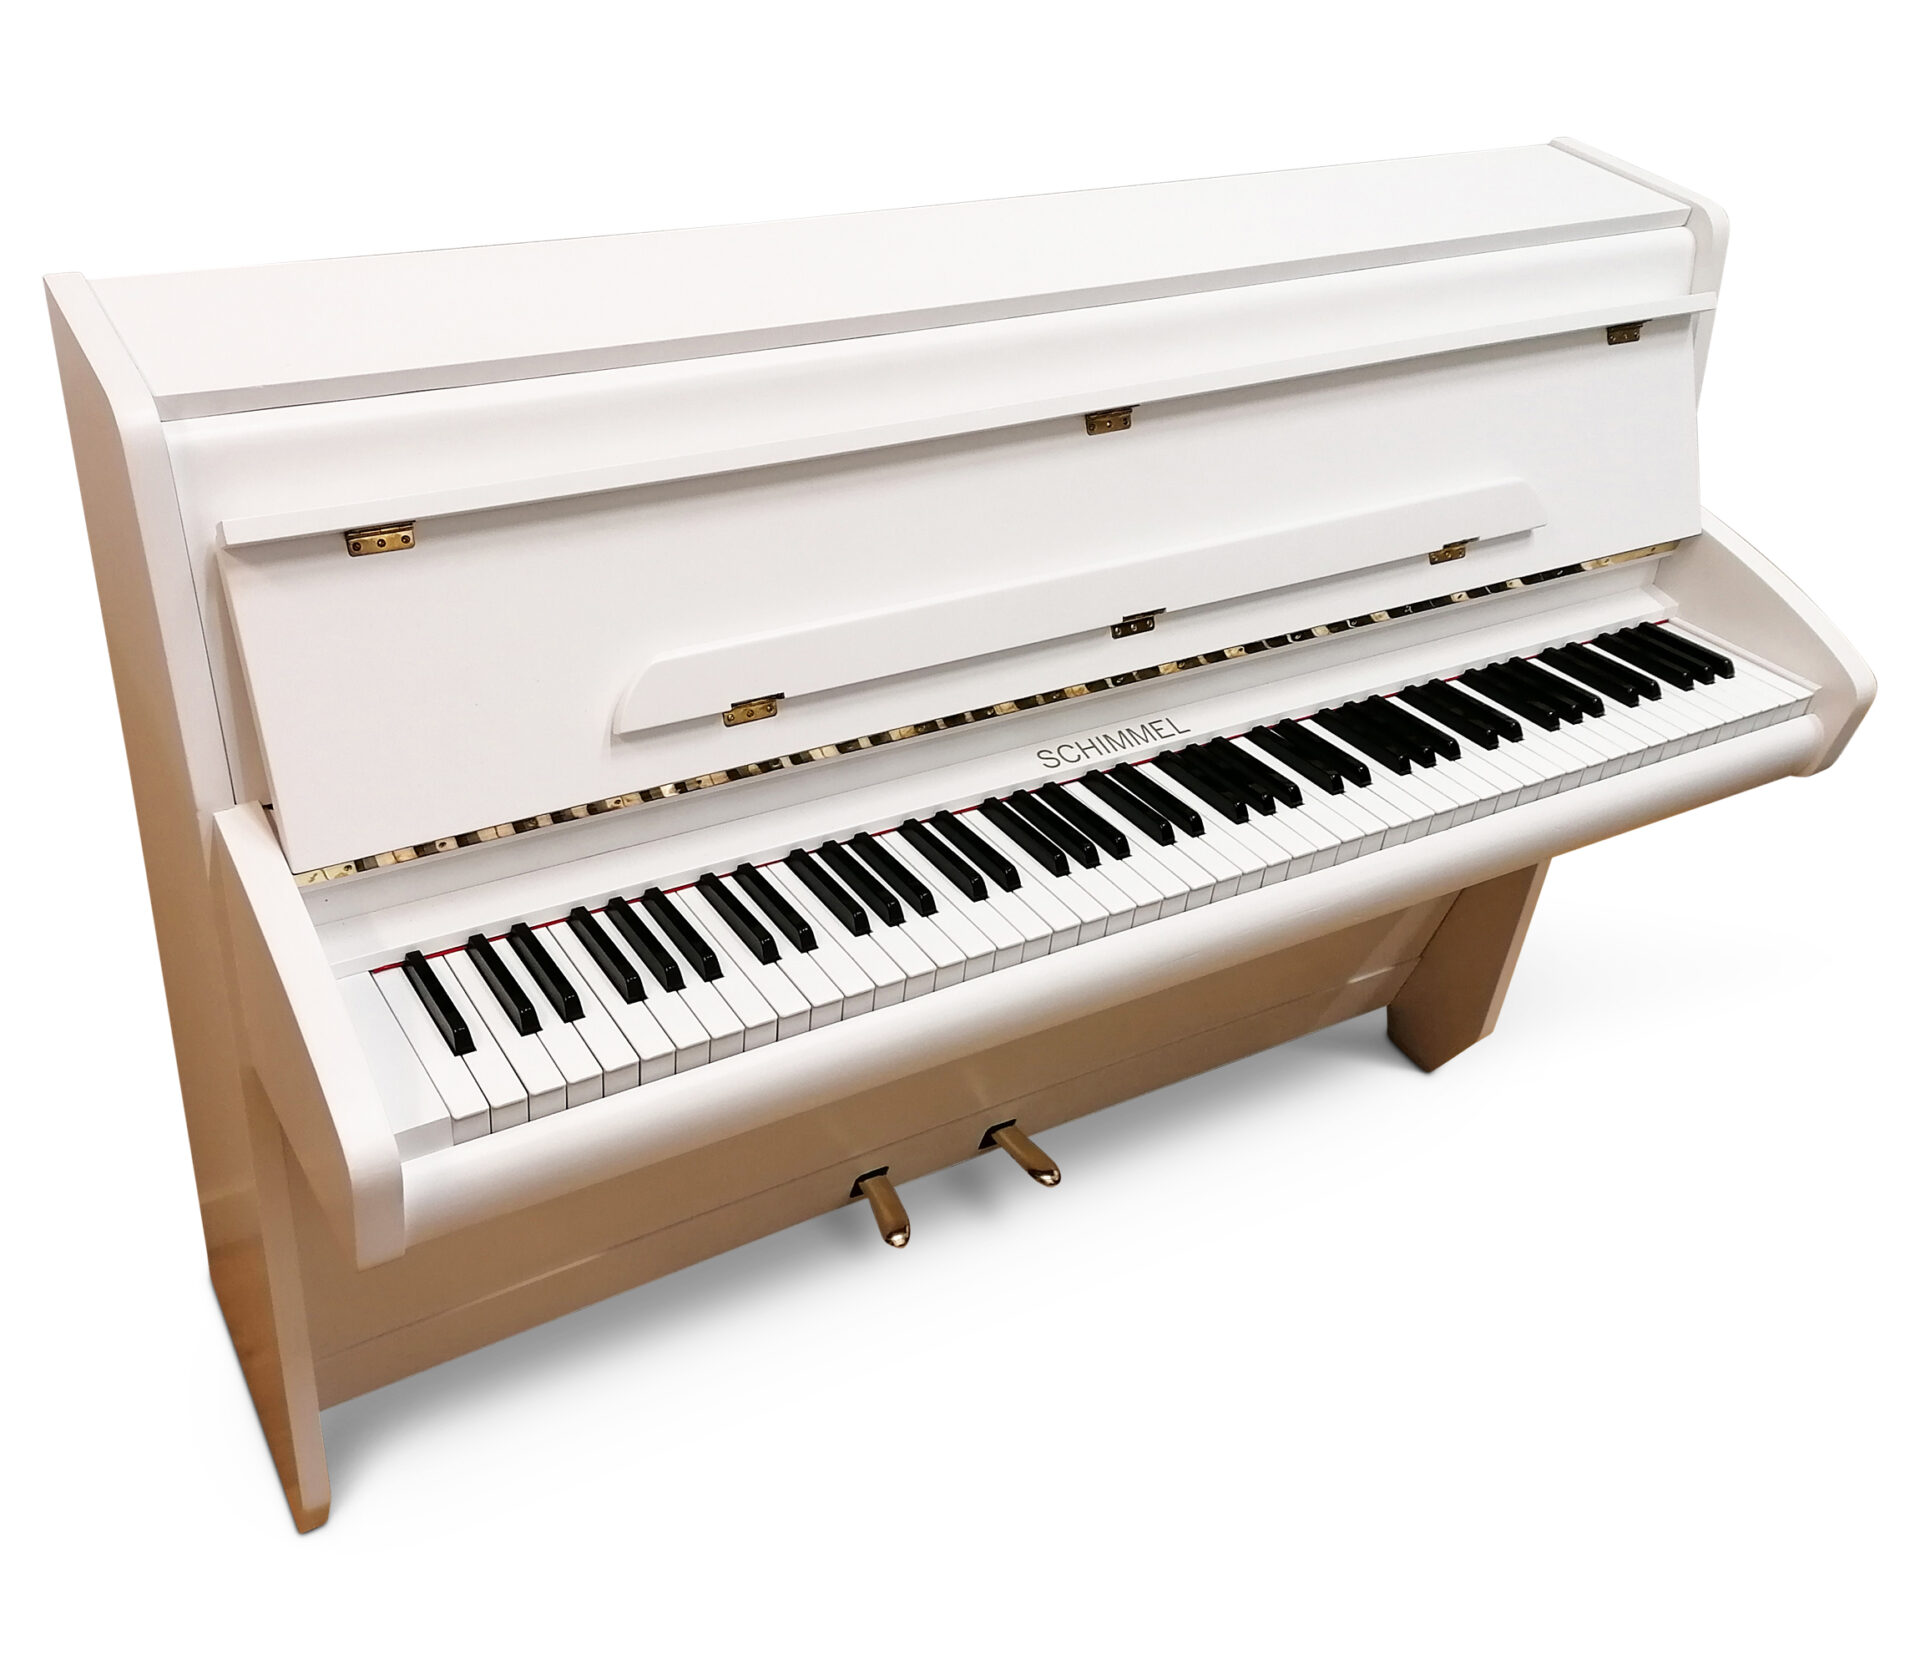 Schimmel modell 100 - Pianomagasinet